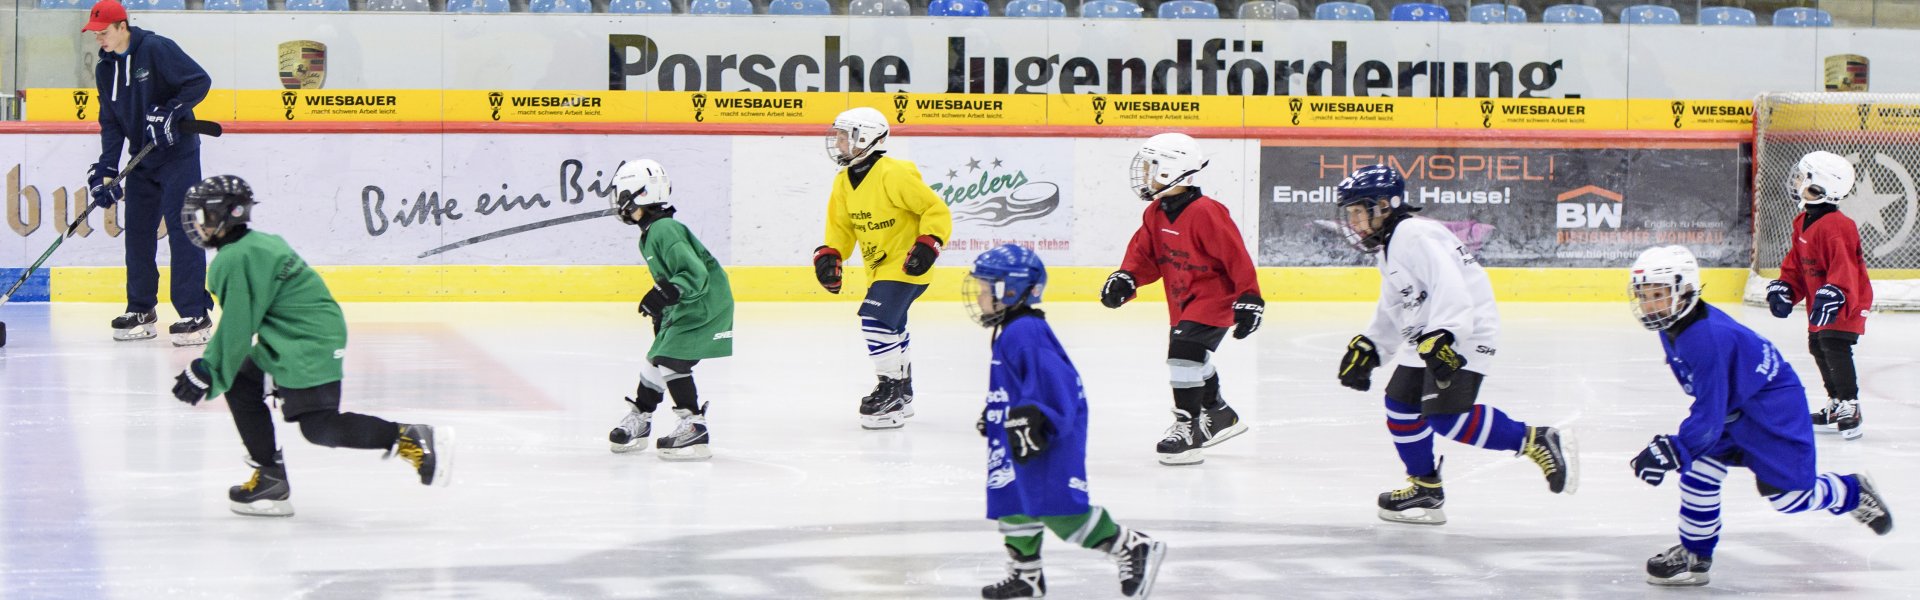 Porsche Eishockey Camp, Schlittschulaufen